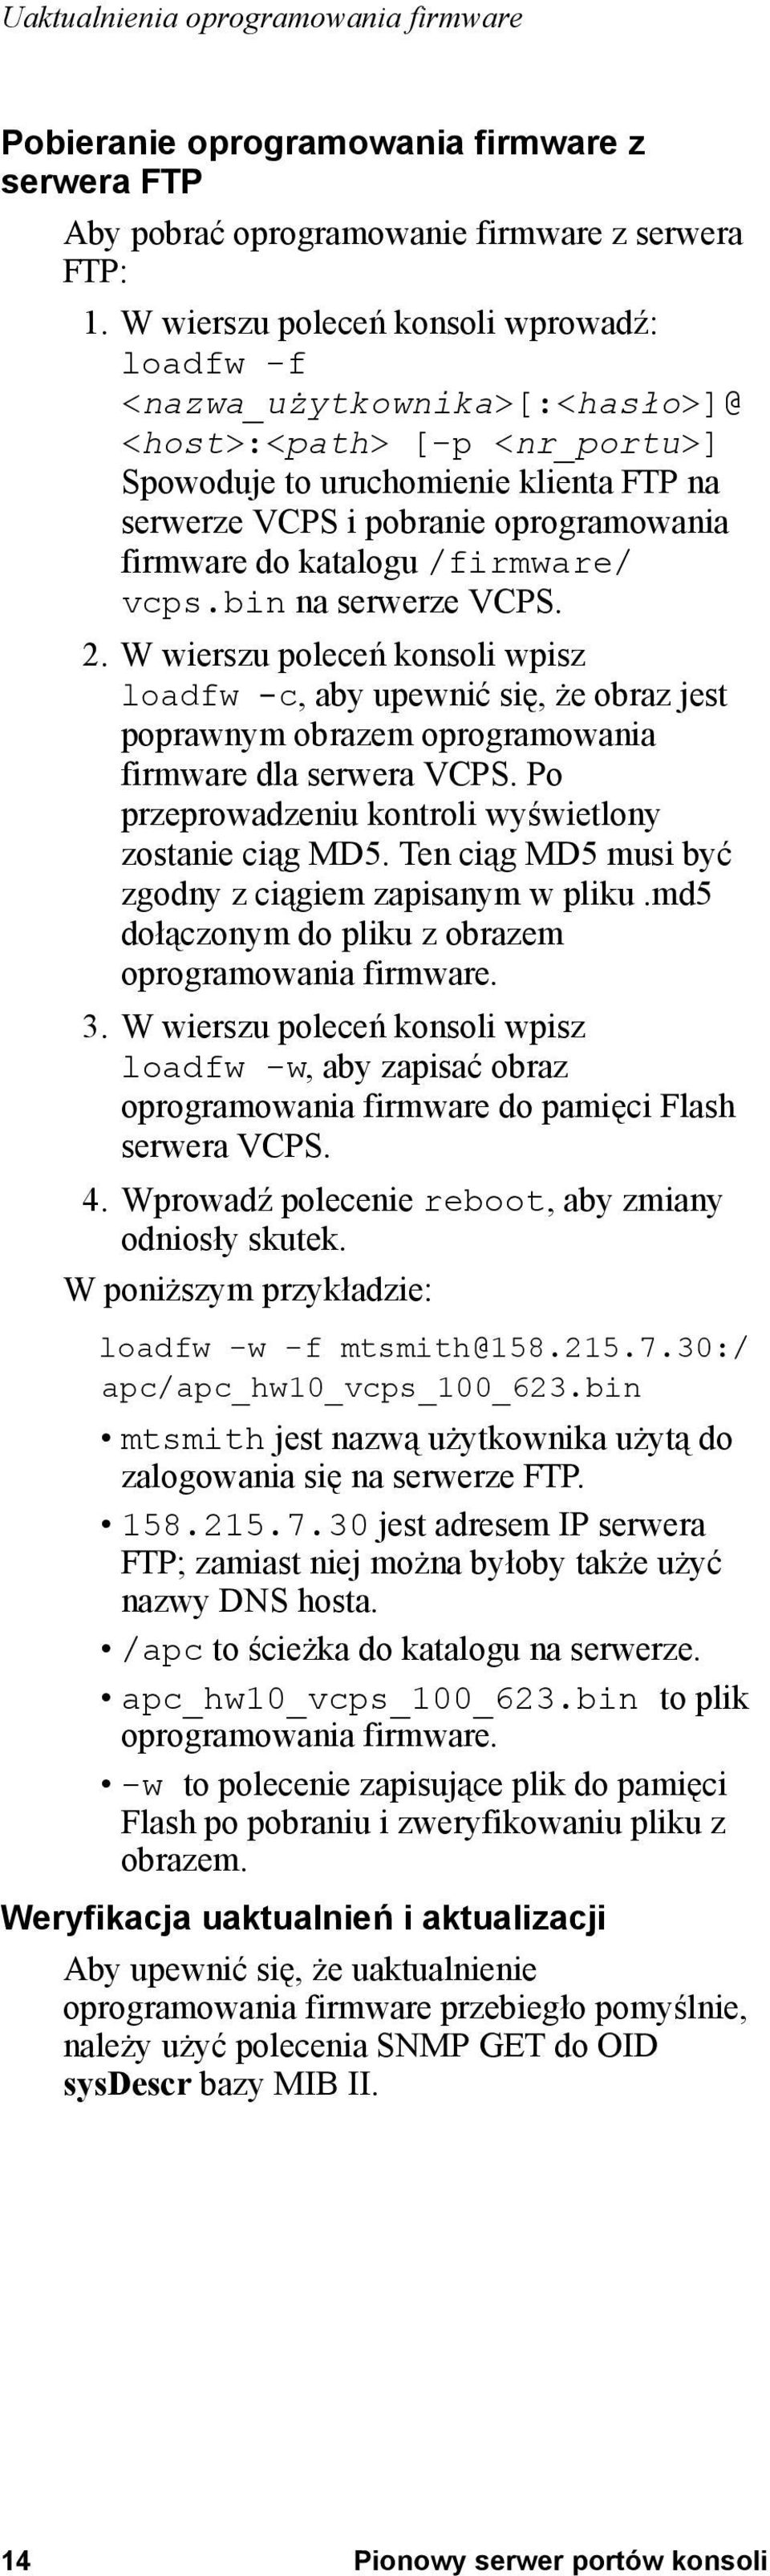 katalogu /firmware/ vcps.bin na serwerze VCPS. 2. W wierszu poleceń konsoli wpisz loadfw -c, aby upewnić się, że obraz jest poprawnym obrazem oprogramowania firmware dla serwera VCPS.